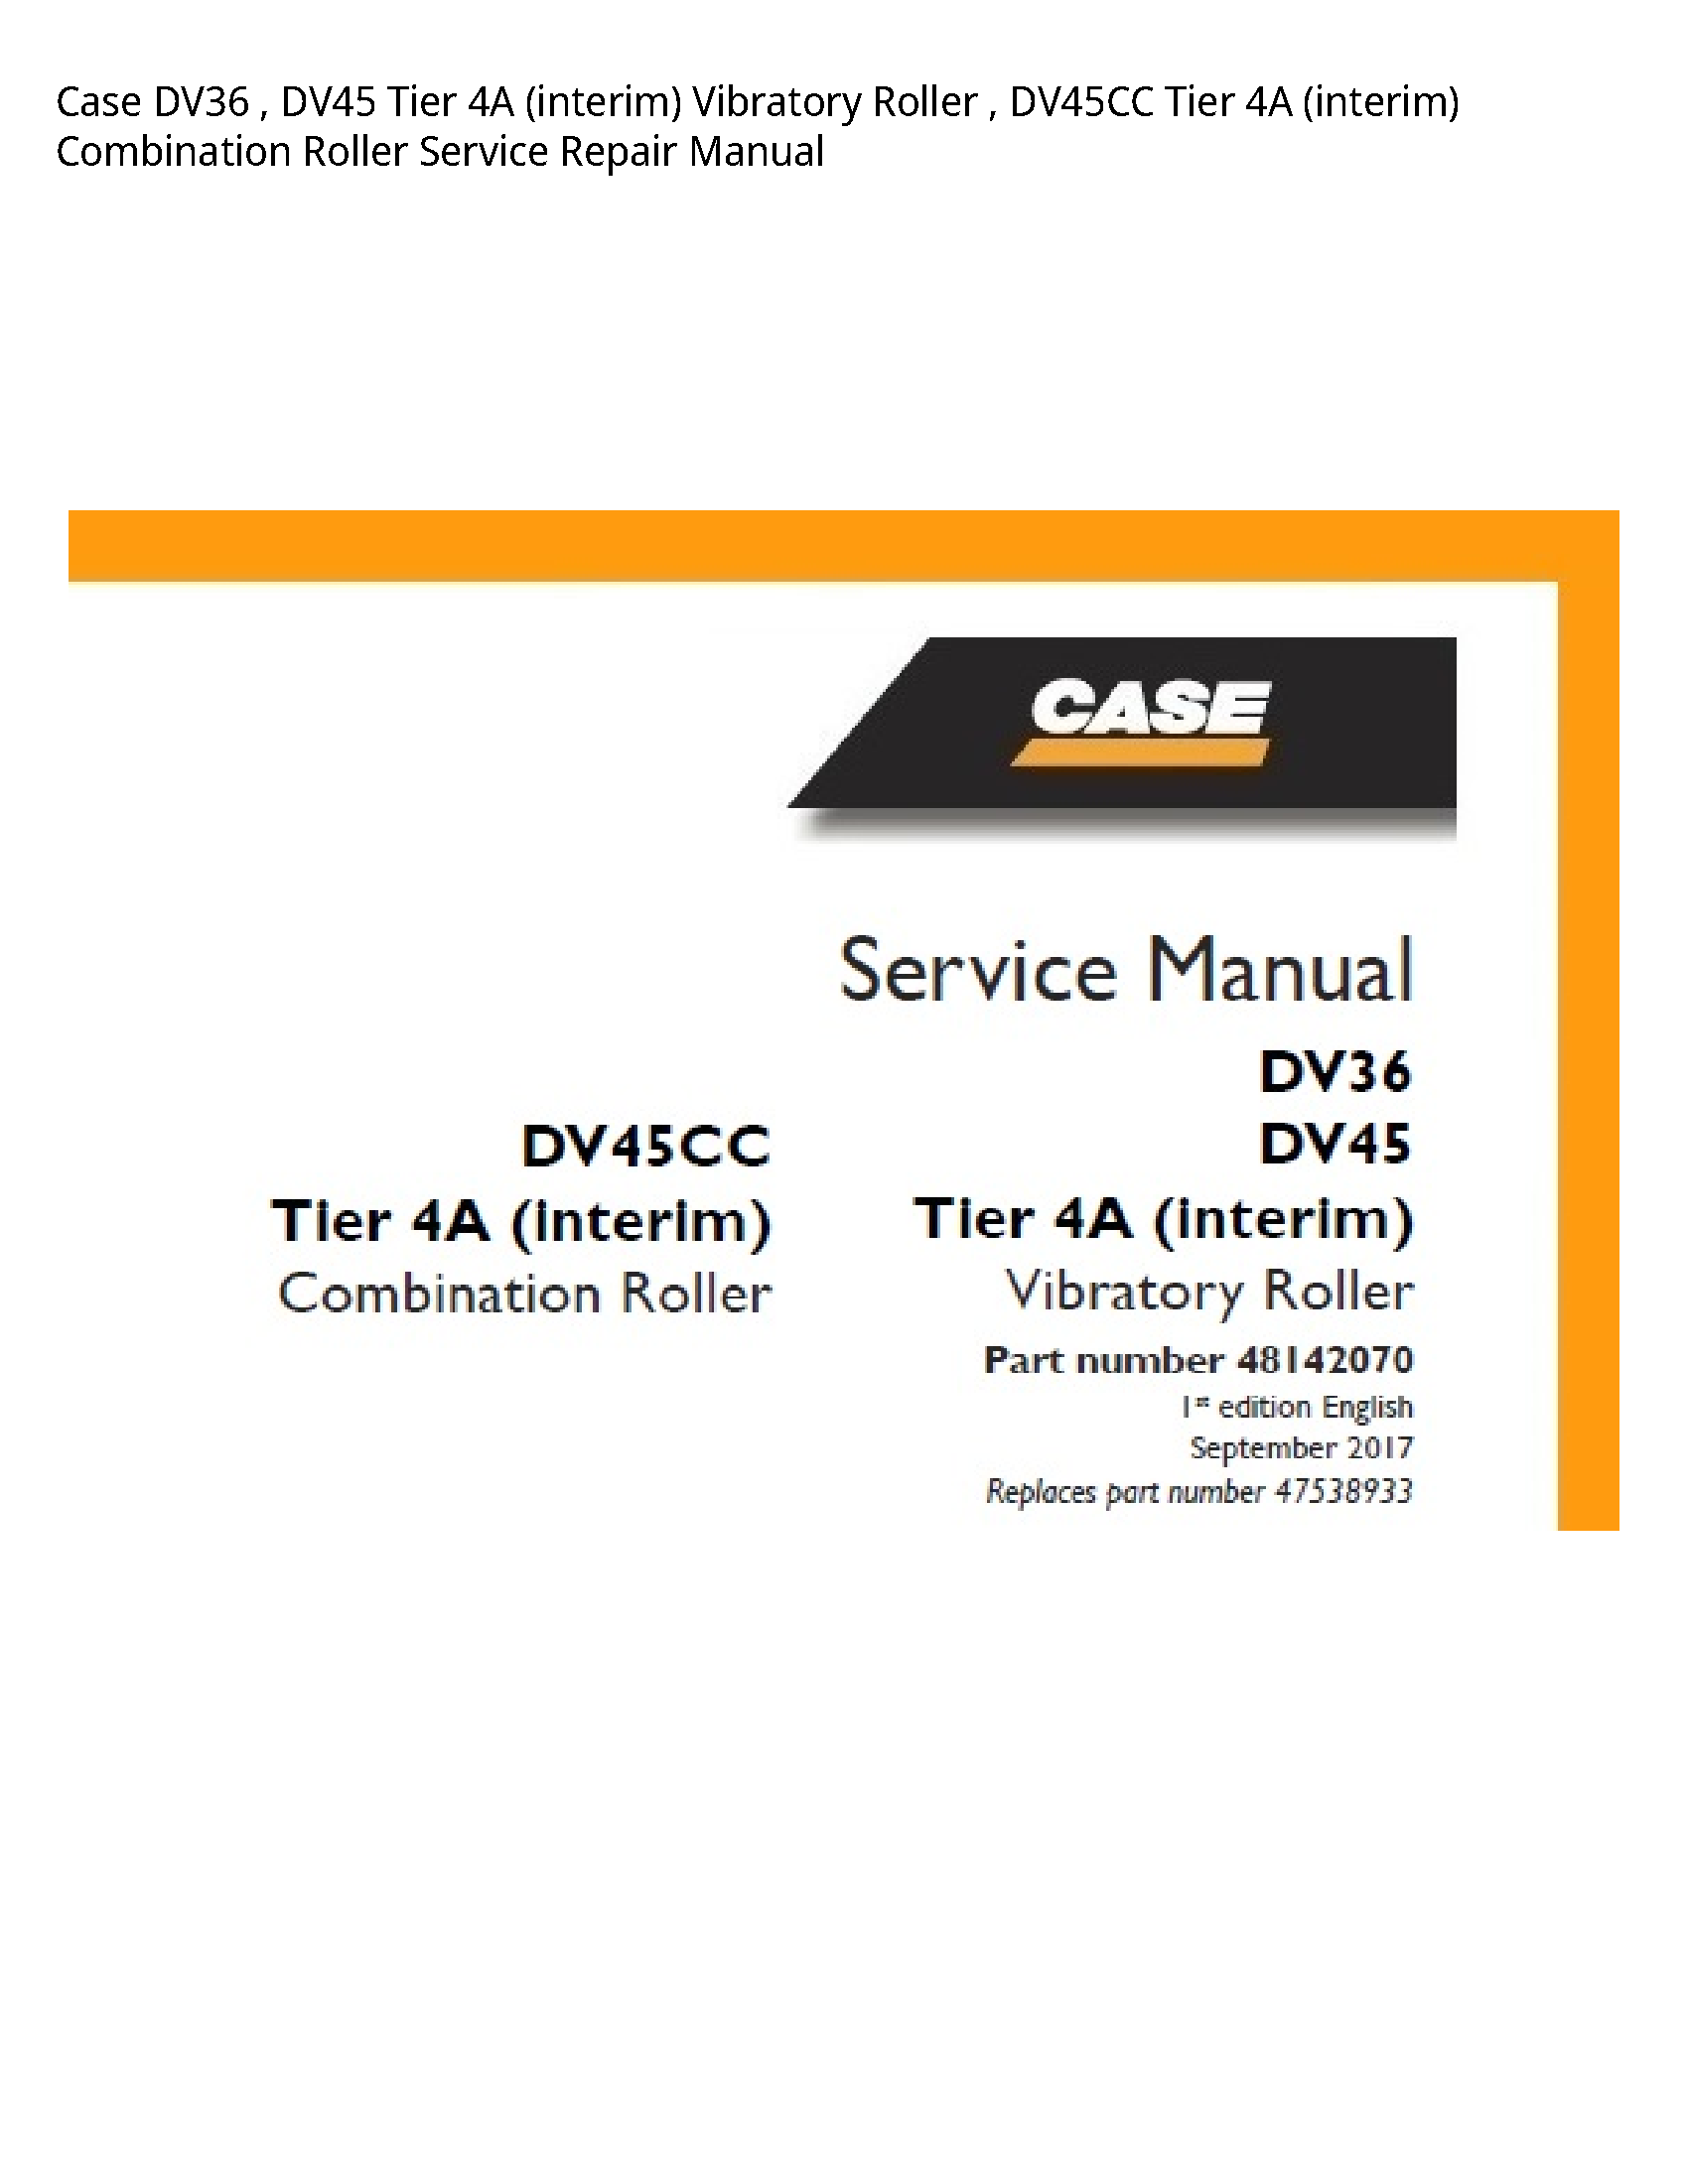 Case/Case IH DV36 Tier (interim) Vibratory Roller Tier (interim) Combination Roller manual